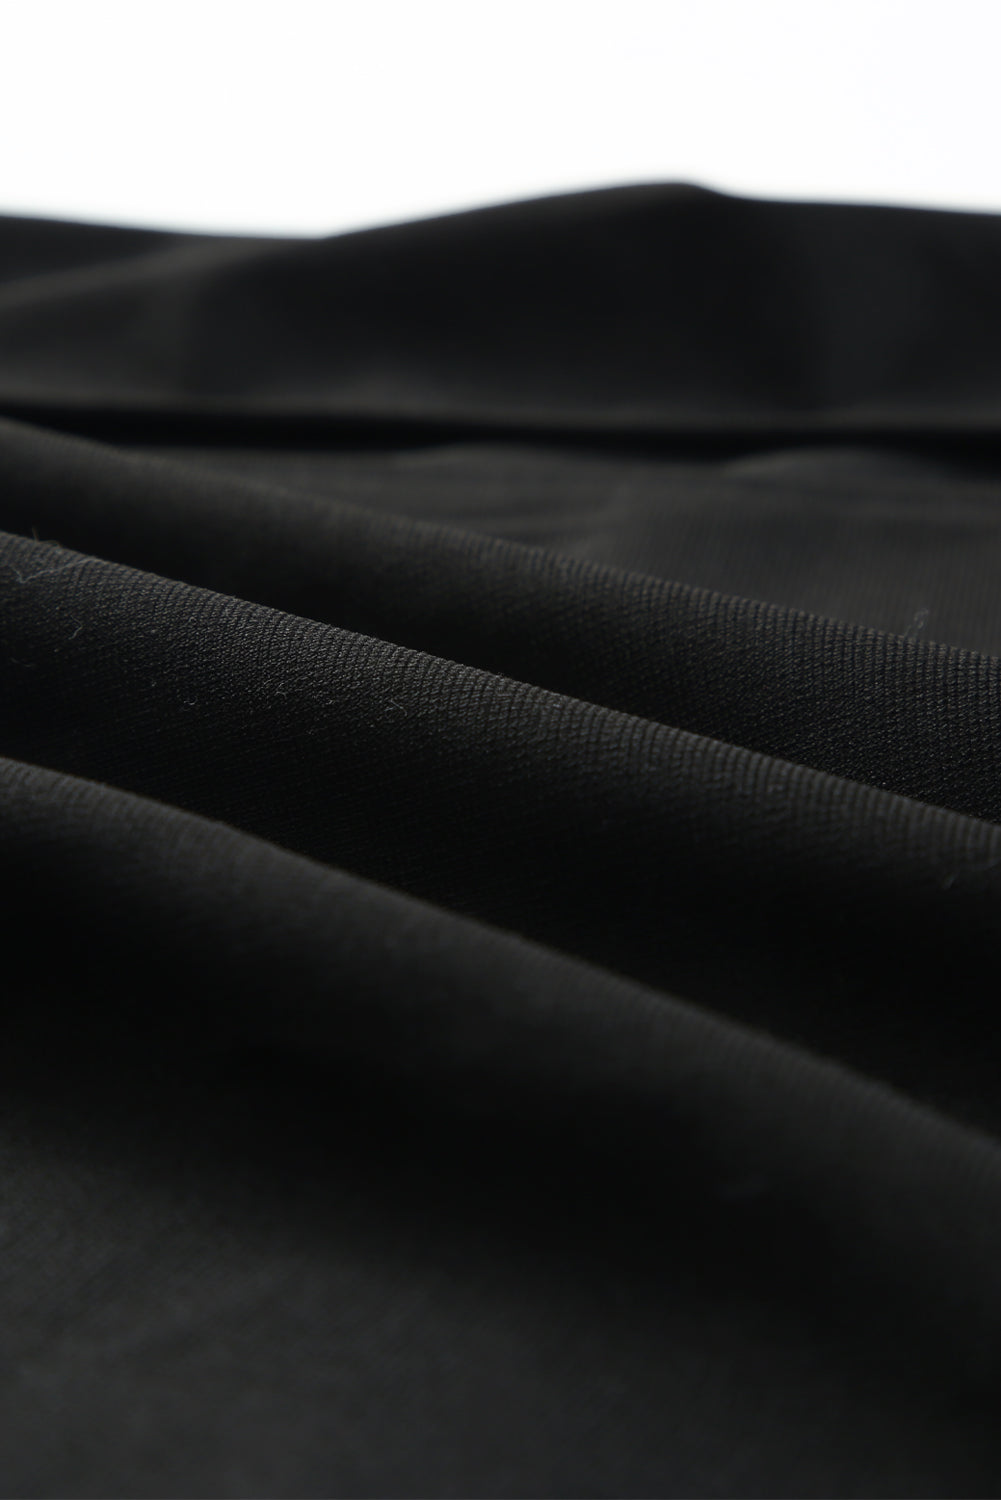 Crna midi haljina s prorezom na naramenice s perjem obrubljenim naramenicama